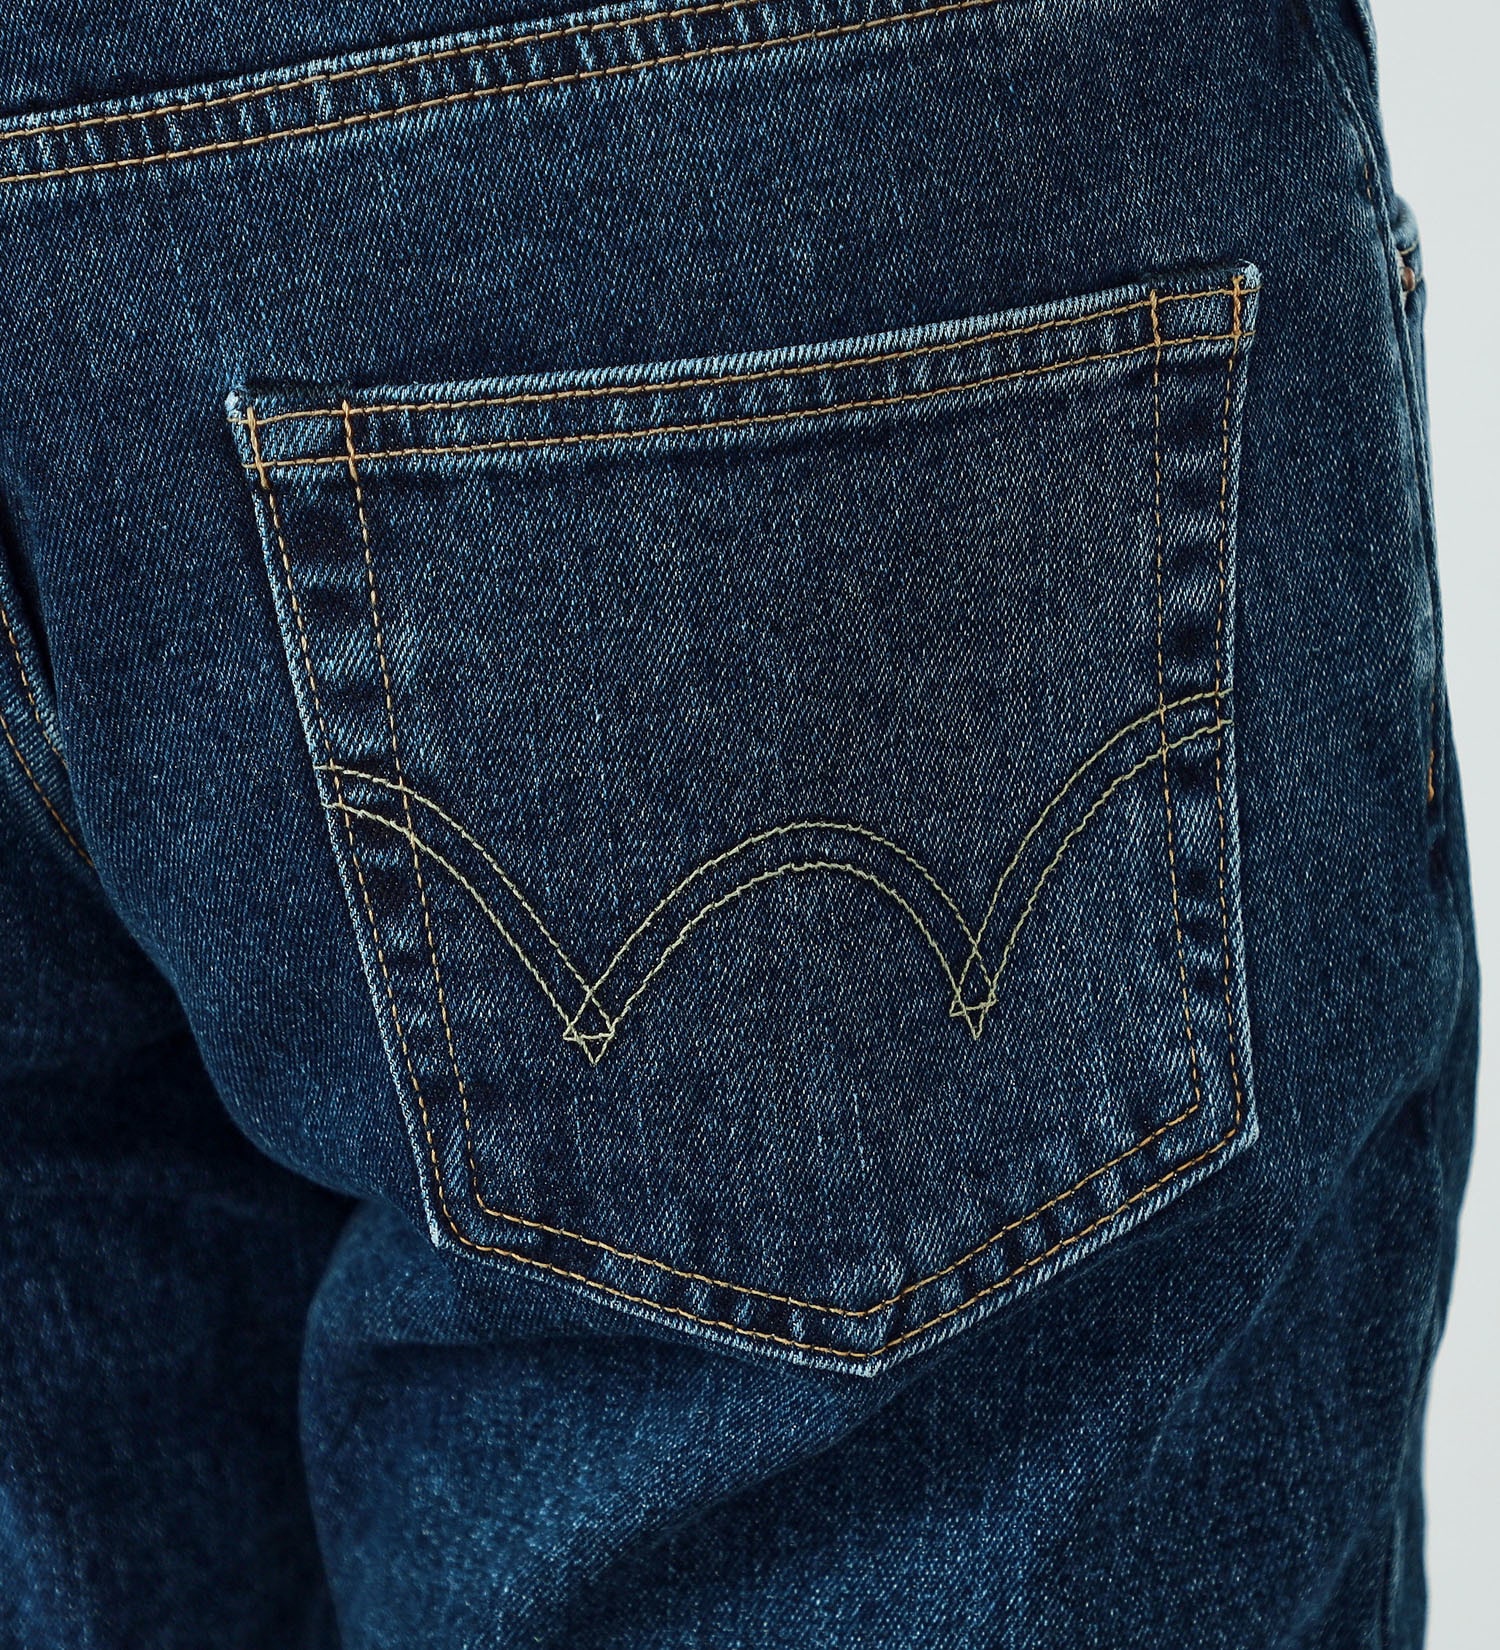 EDWIN(エドウイン)の【試着対象】【WEB限定】五・八デニム レギュラーストレートデニムパンツ ふつうのジーンズ 日本製 MADE IN JAPAN|パンツ/デニムパンツ/メンズ|中色ブルー